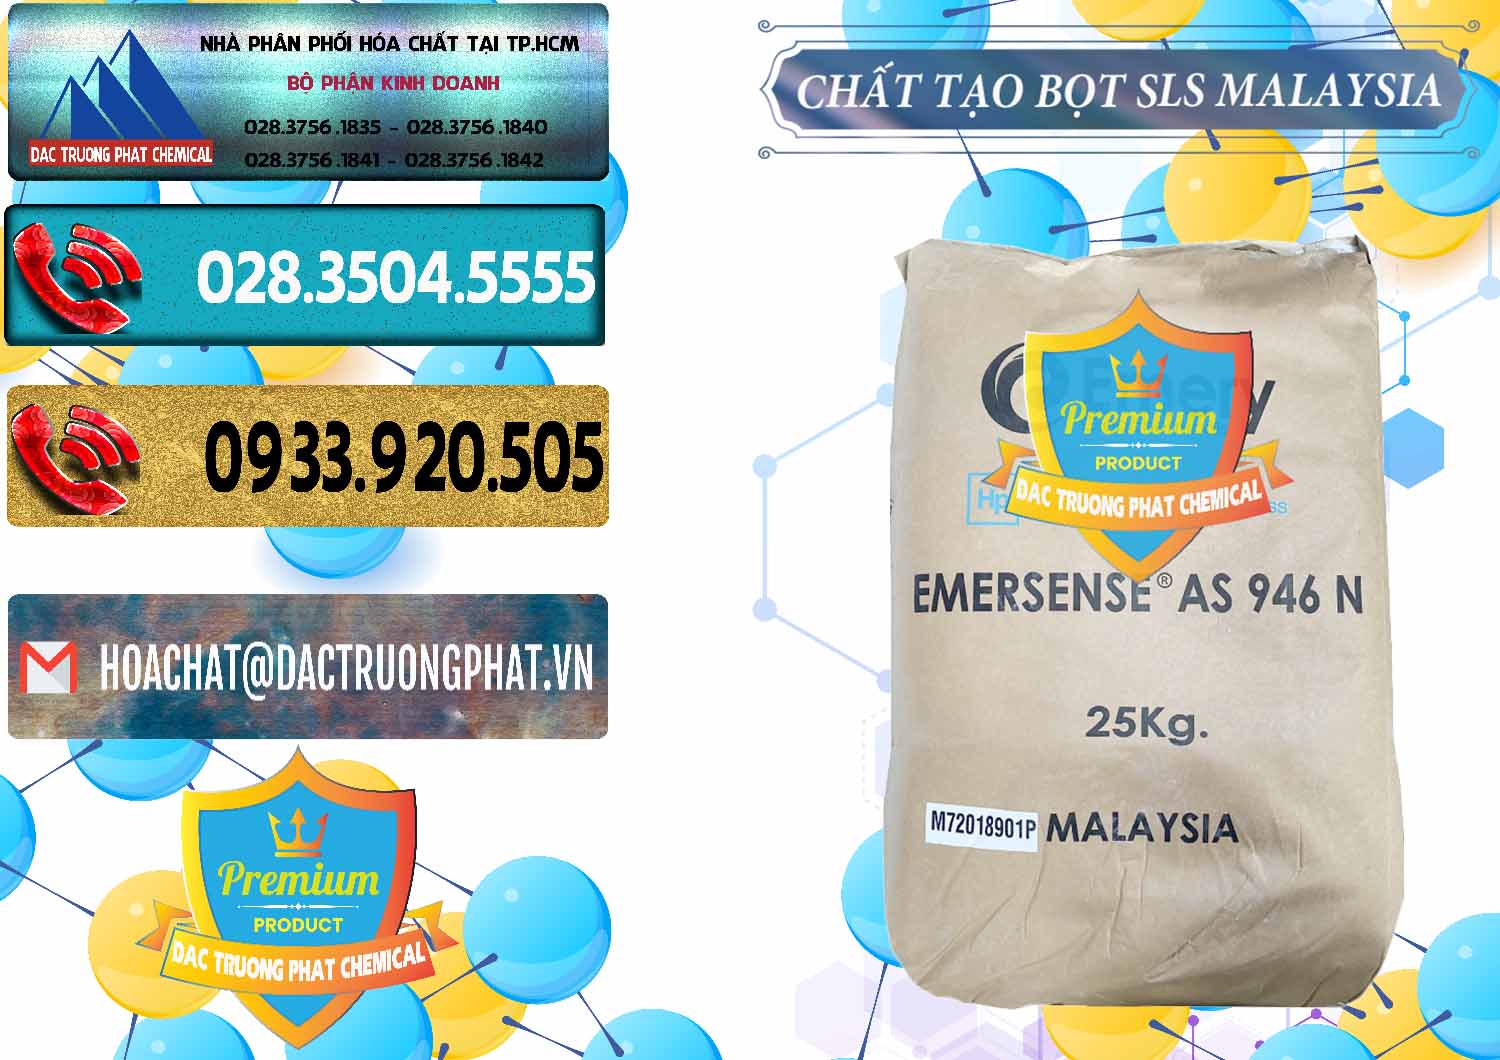 Cty phân phối - bán Chất Tạo Bọt SLS Emery - Emersense AS 946N Mã Lai Malaysia - 0423 - Nhà phân phối - cung cấp hóa chất tại TP.HCM - hoachatdetnhuom.com